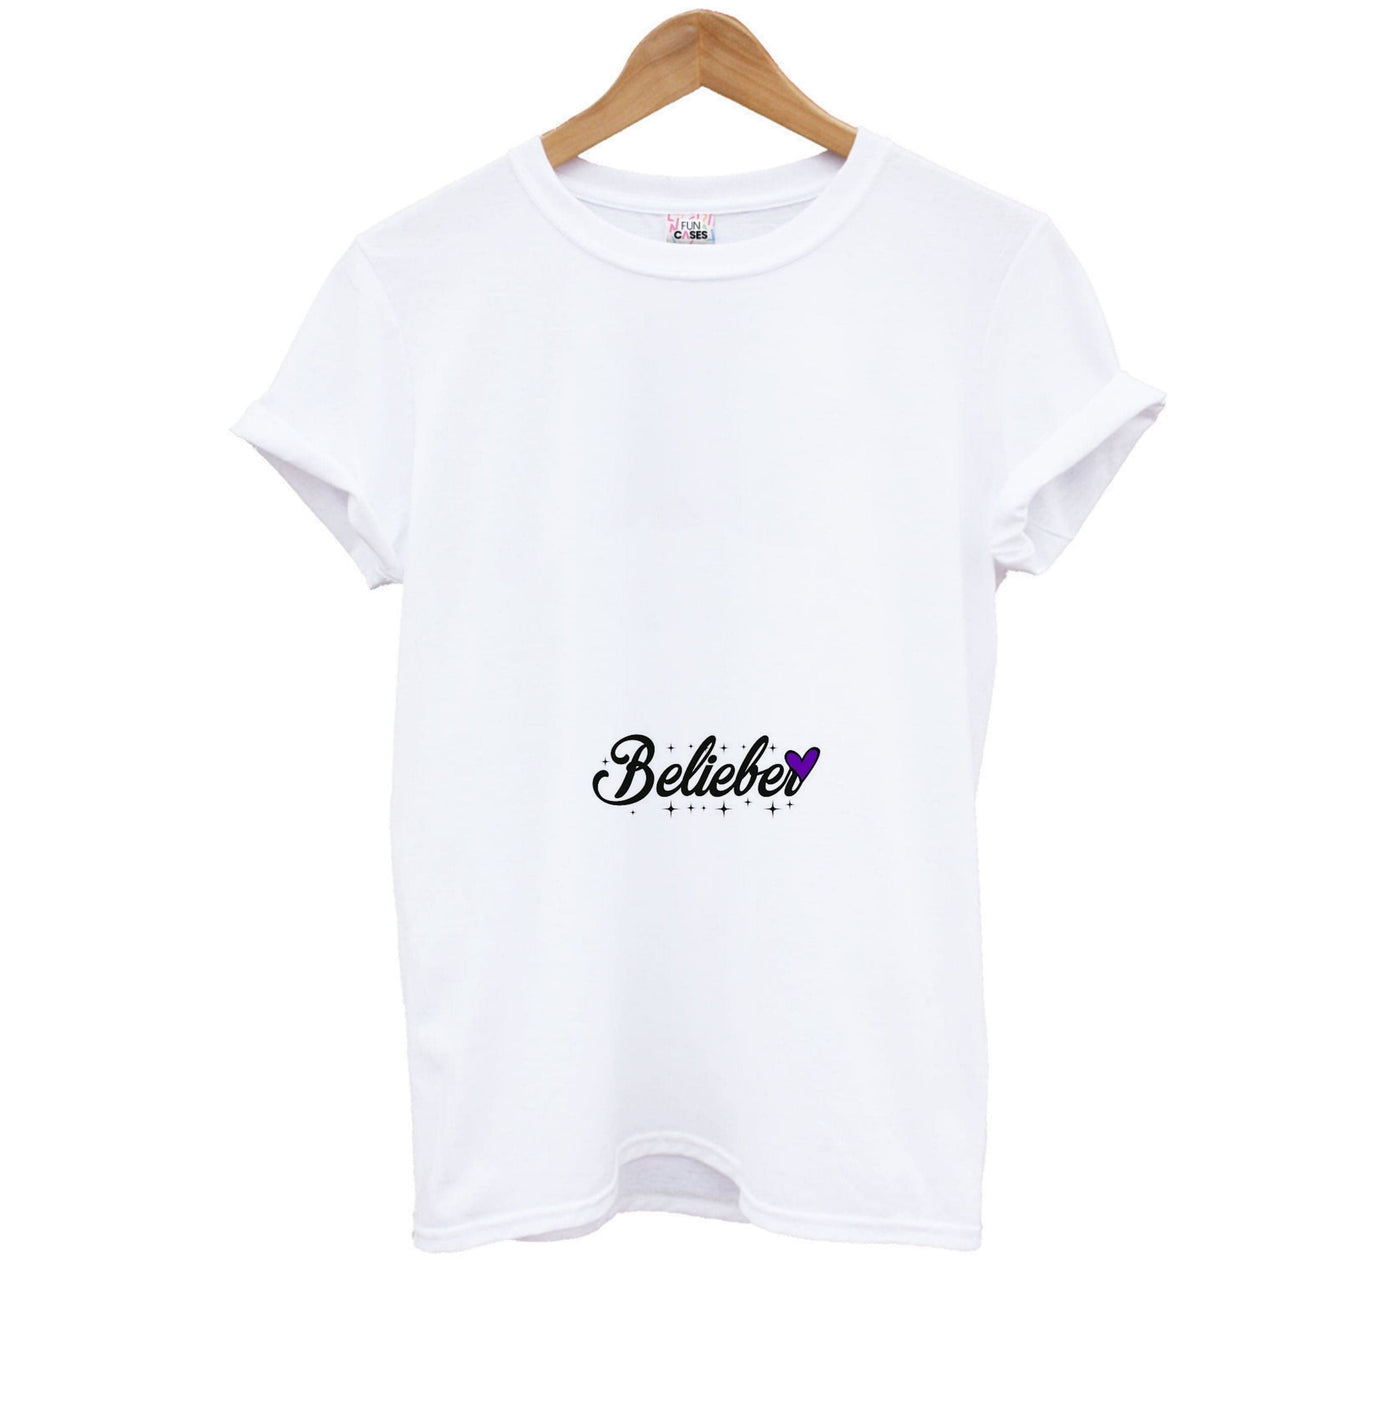 Belieber Signature - Justin Bieber Kids T-Shirt